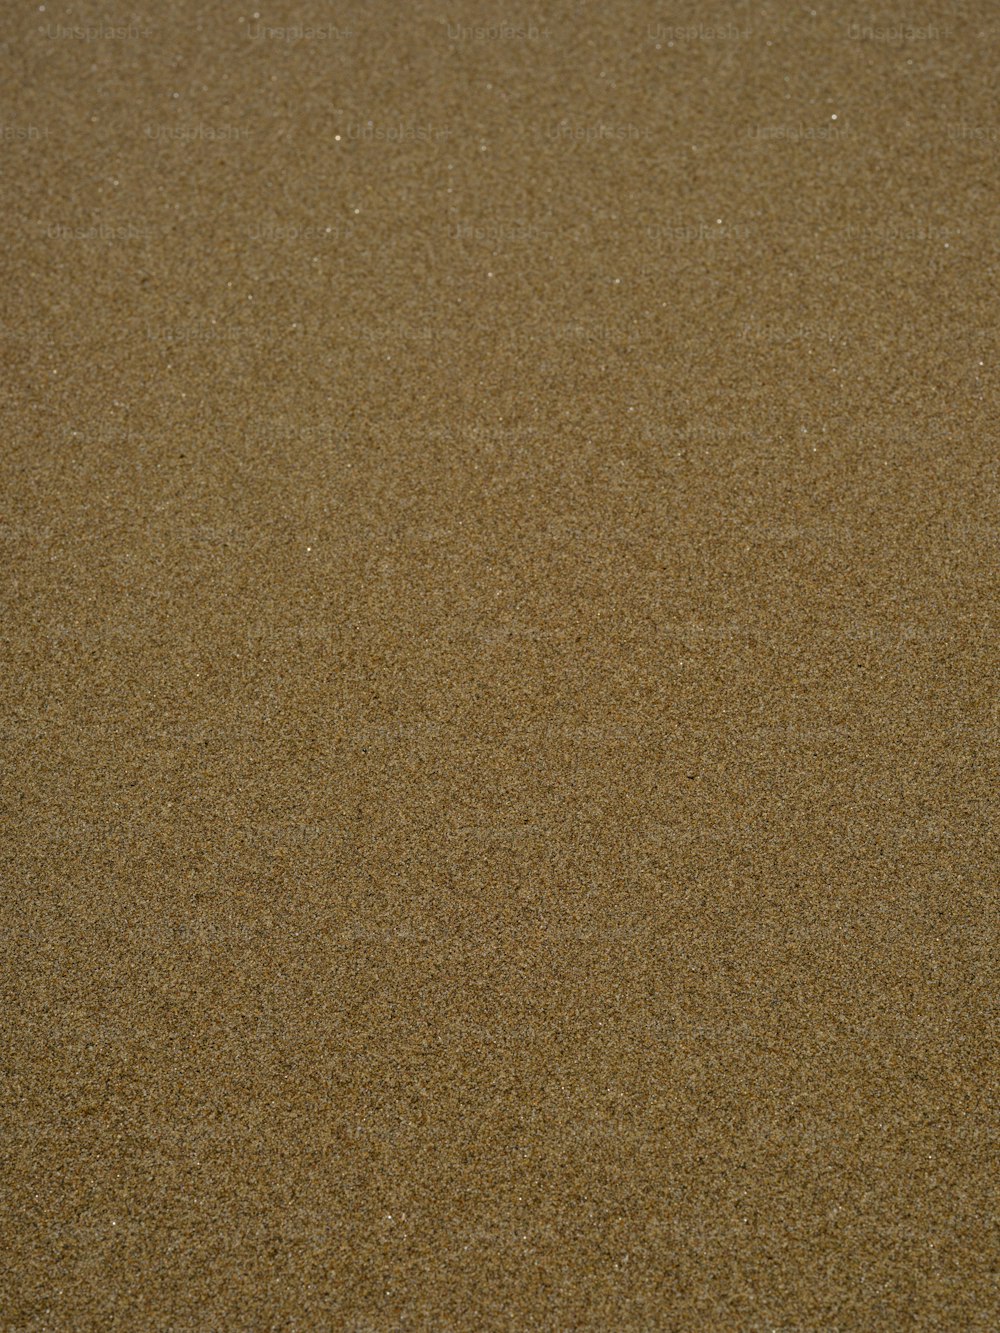 Un oiseau se tient dans le sable sur la plage